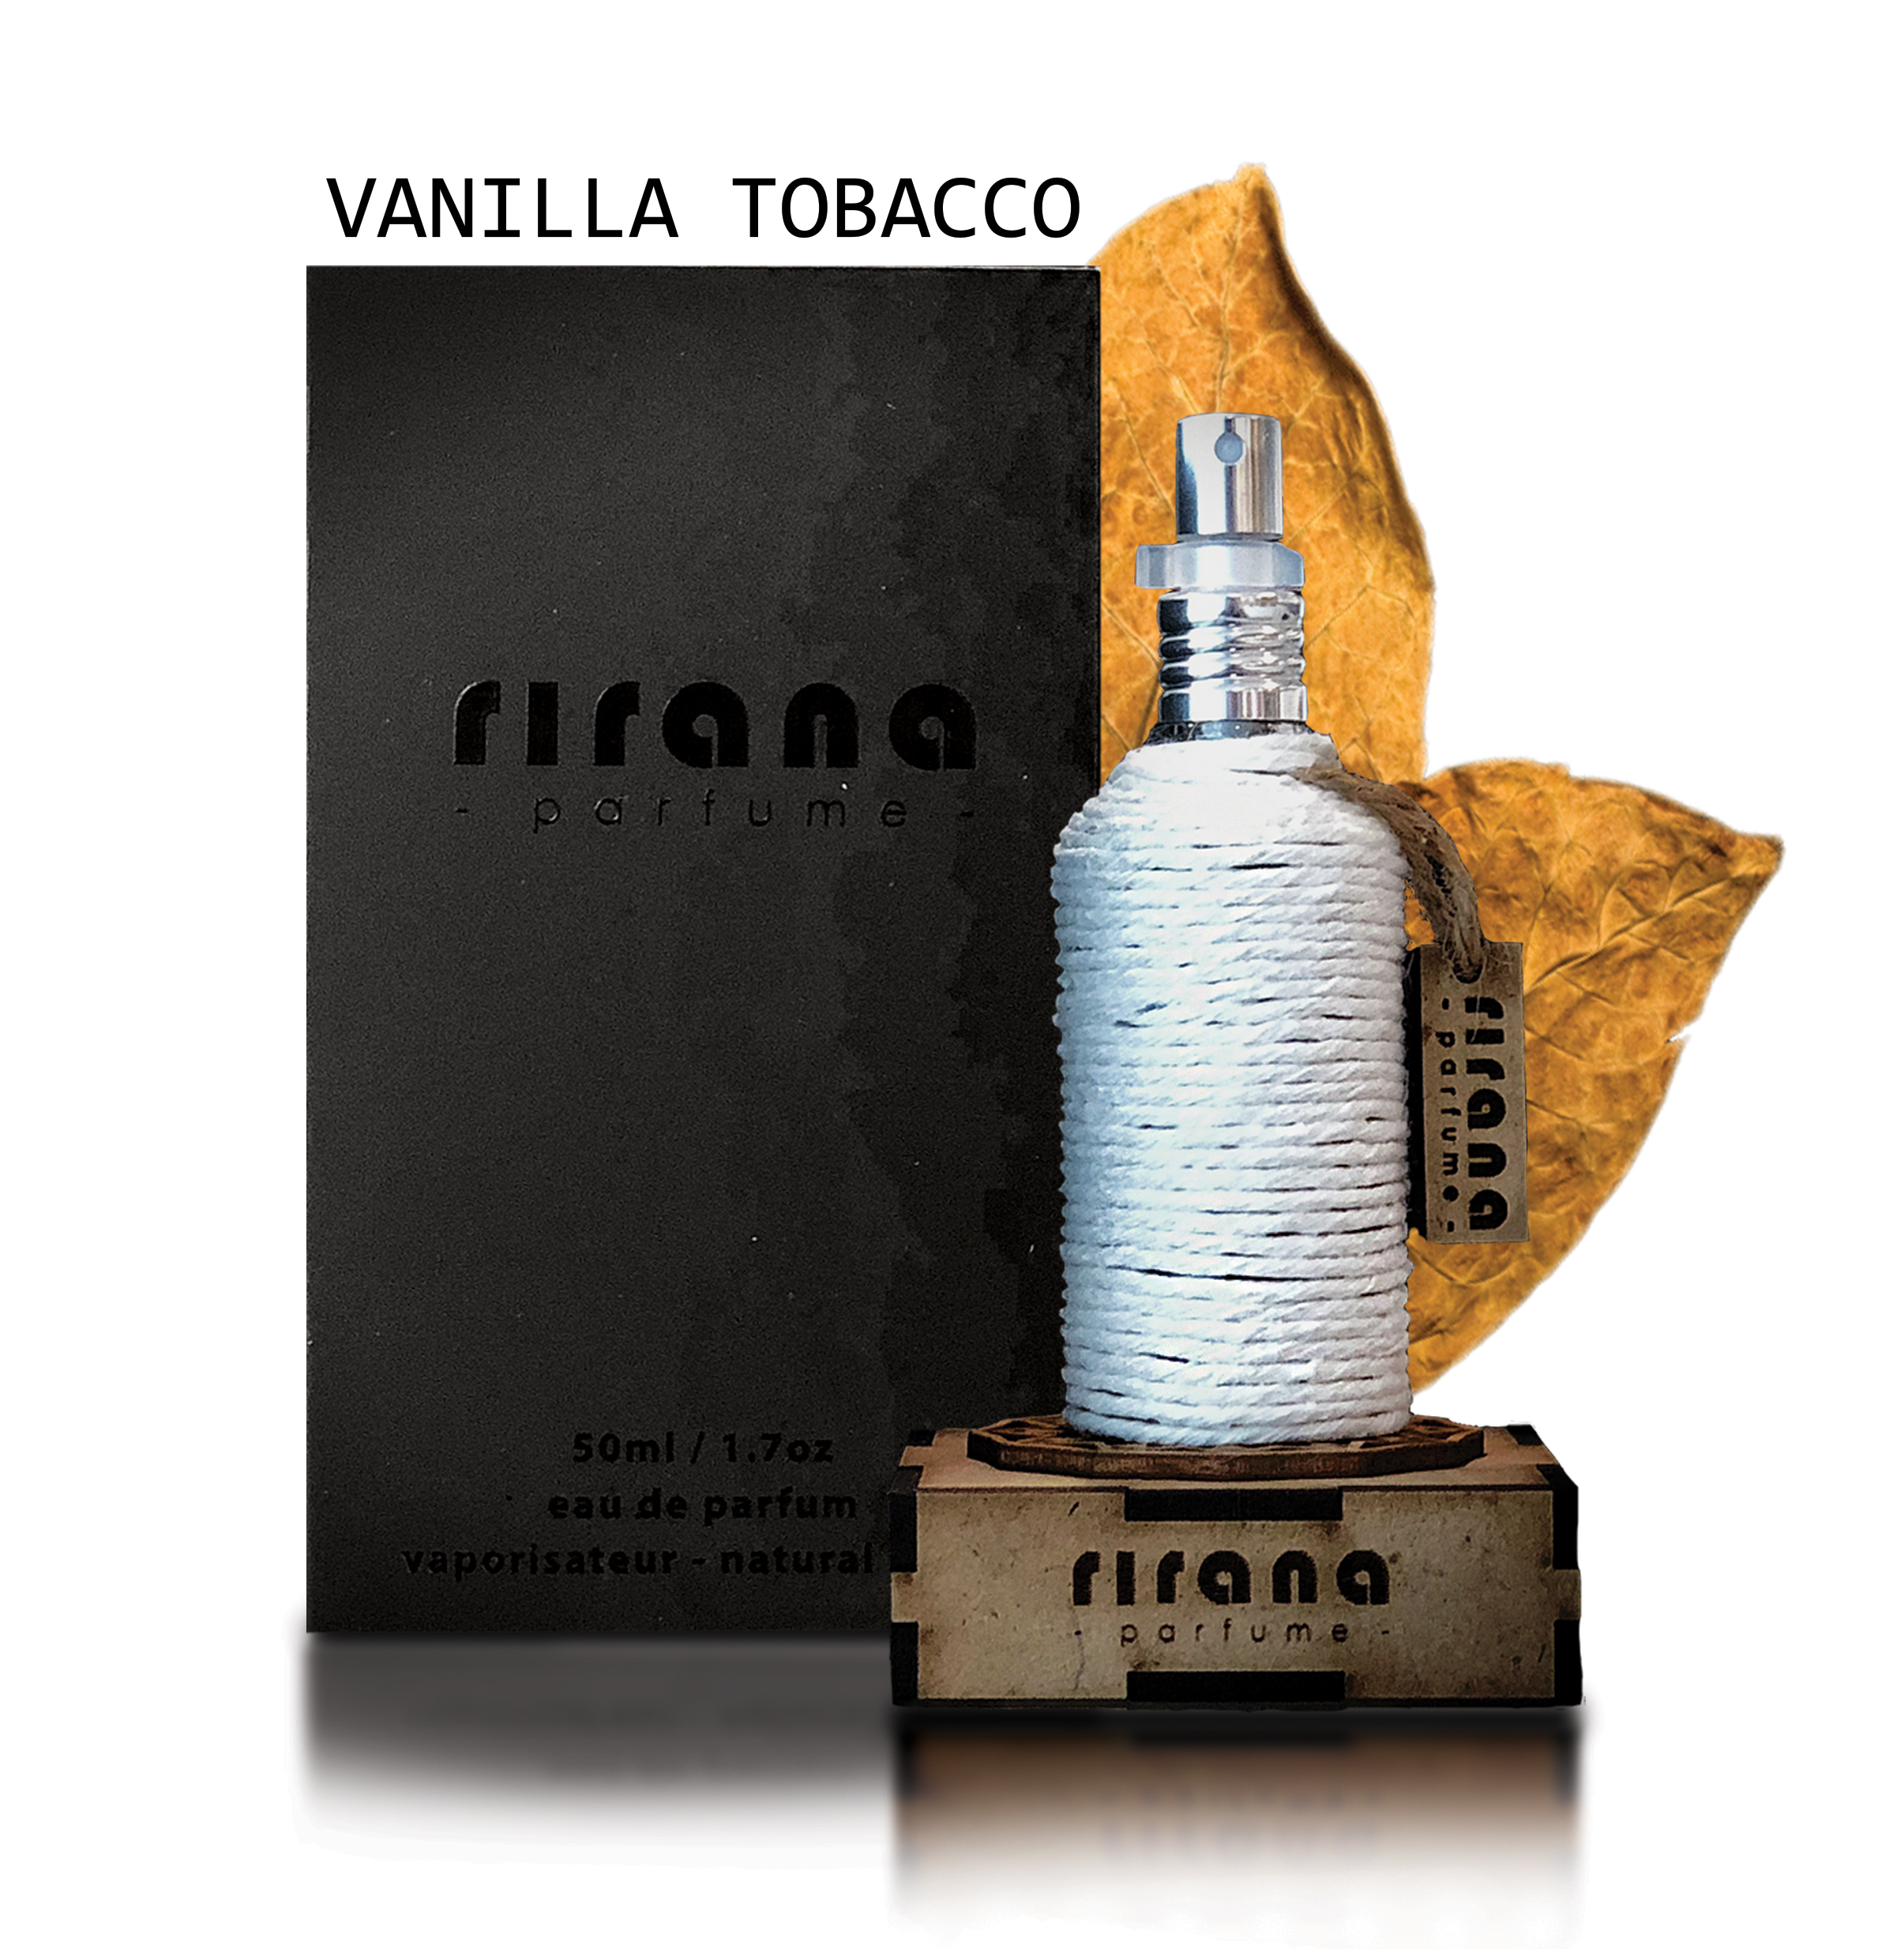 tobacco and vanilla perfume